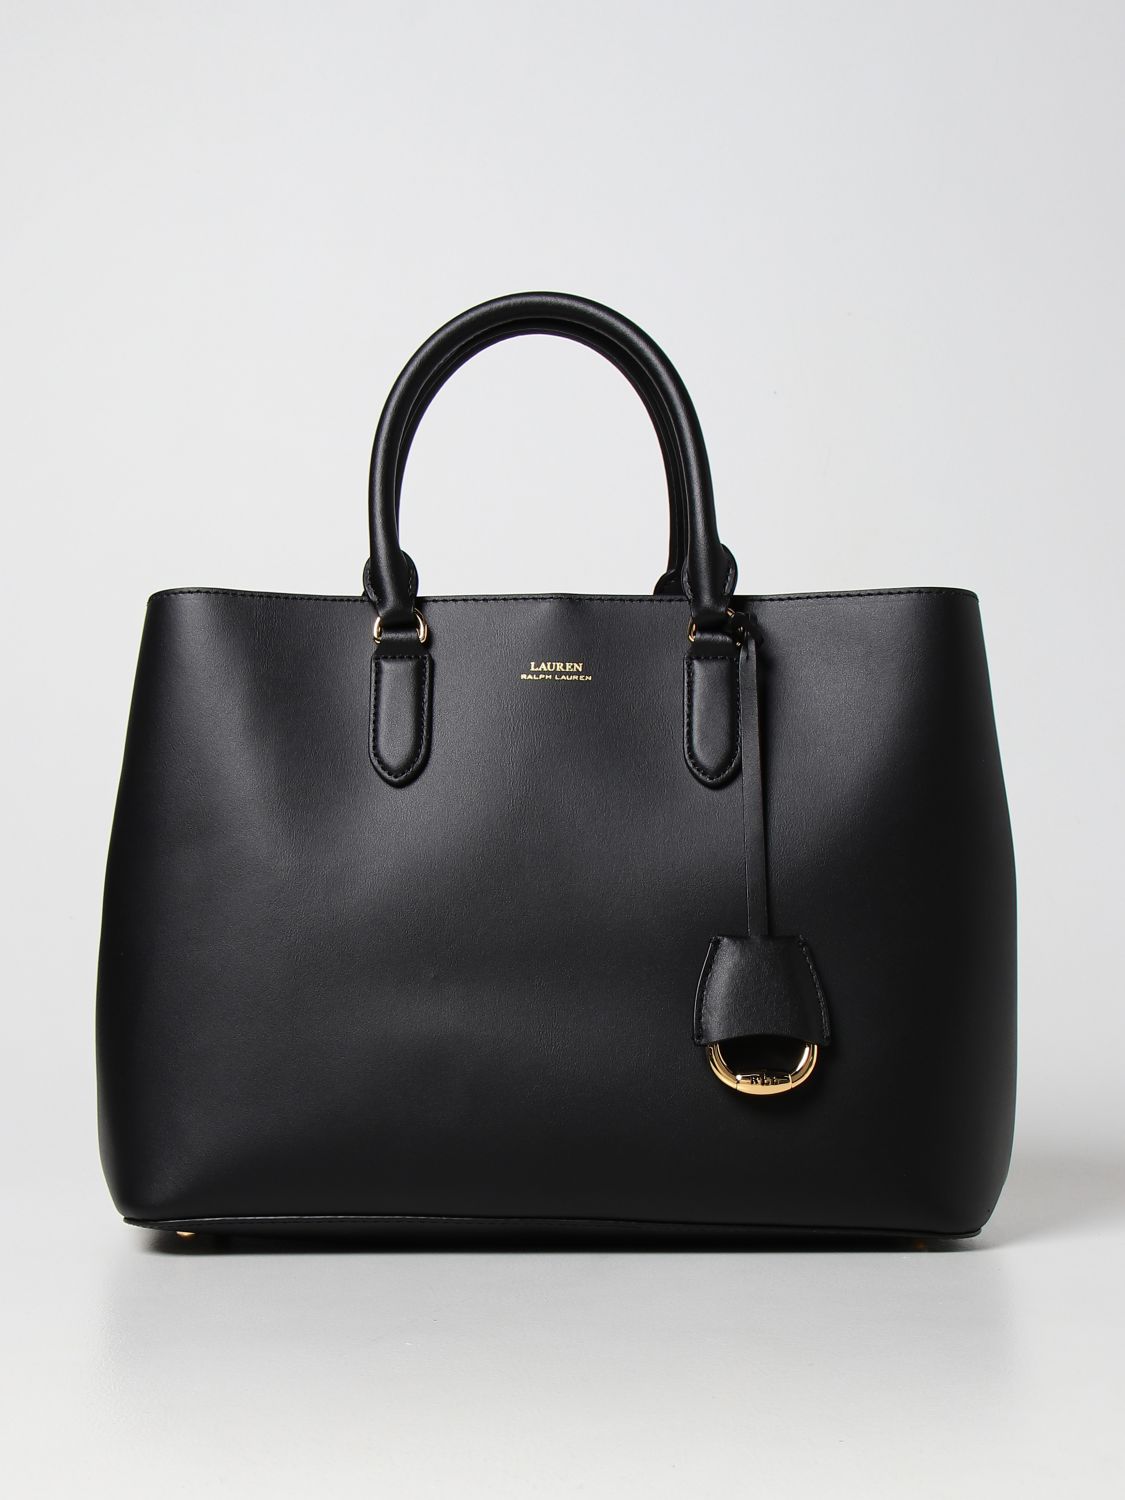 LAUREN RALPH LAUREN: leather tote bag - Black | Lauren Ralph Lauren tote  bags 4316976800 online on 